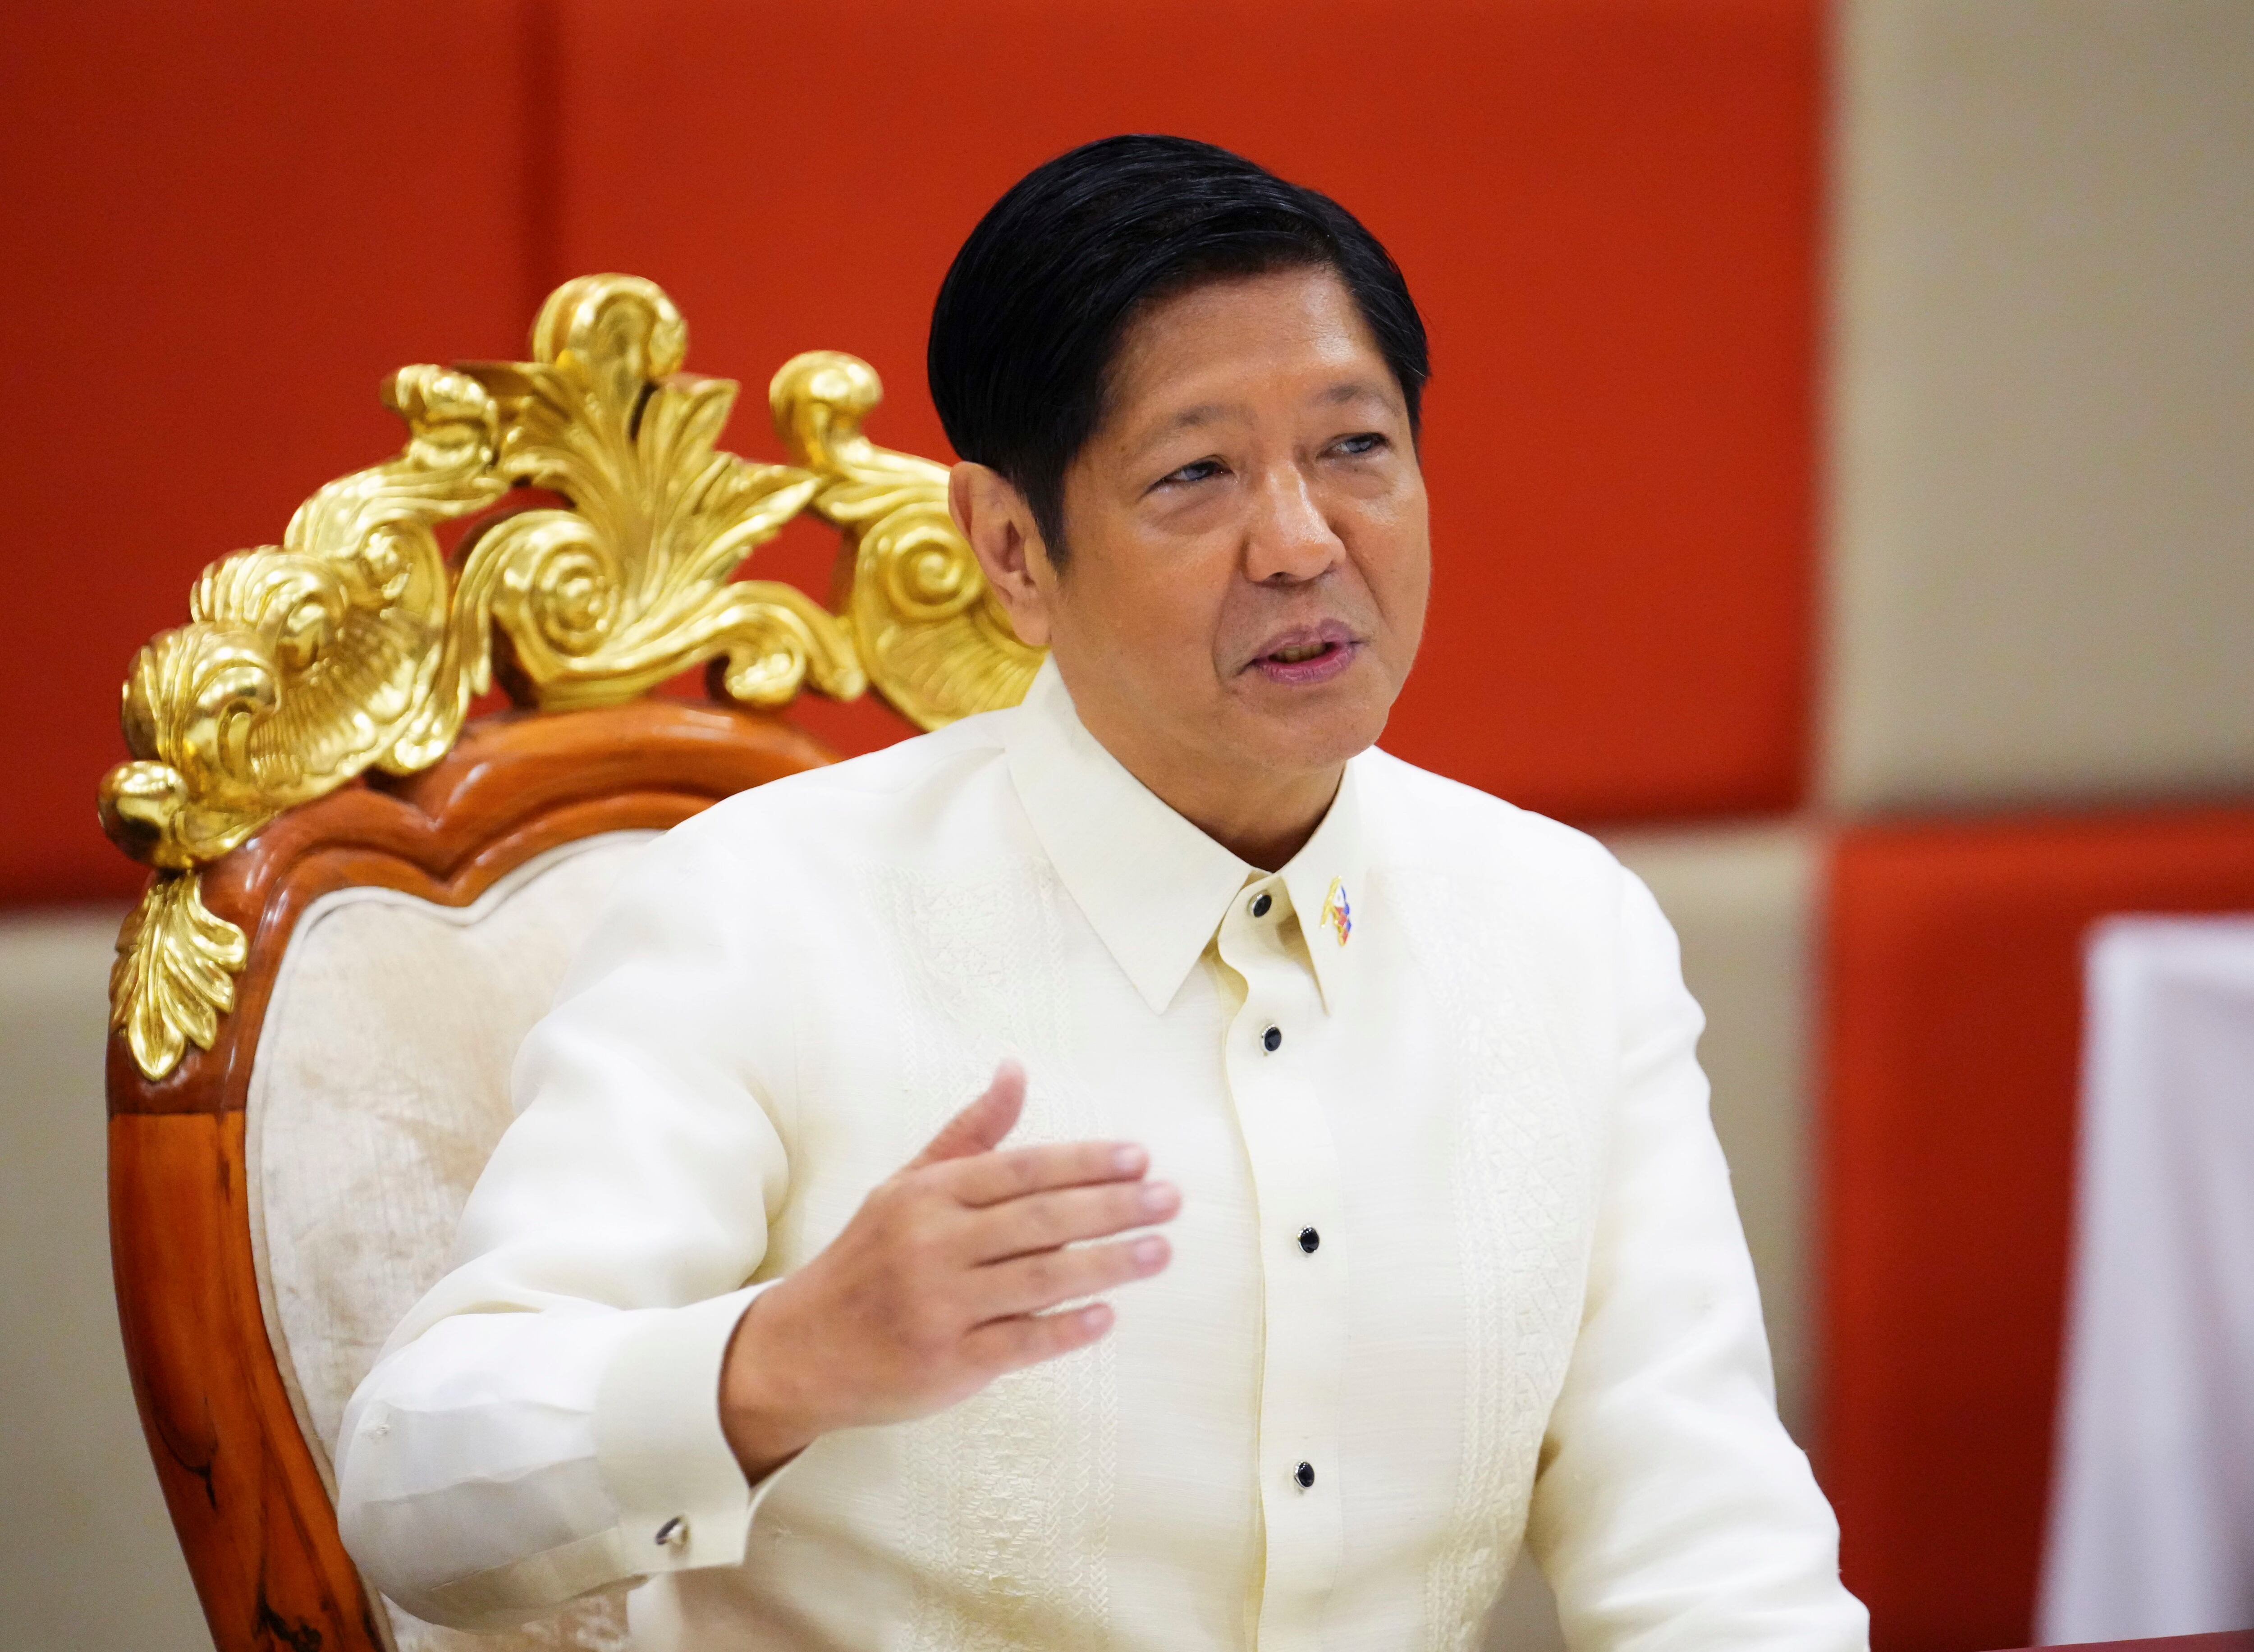 El presidente filipino, Ferdinand Marcos, ha prometido no ceder a la “coerción”, sin mencionar a China por su nombre (Sean Kilpatrick/Canadian Press v / DPA)